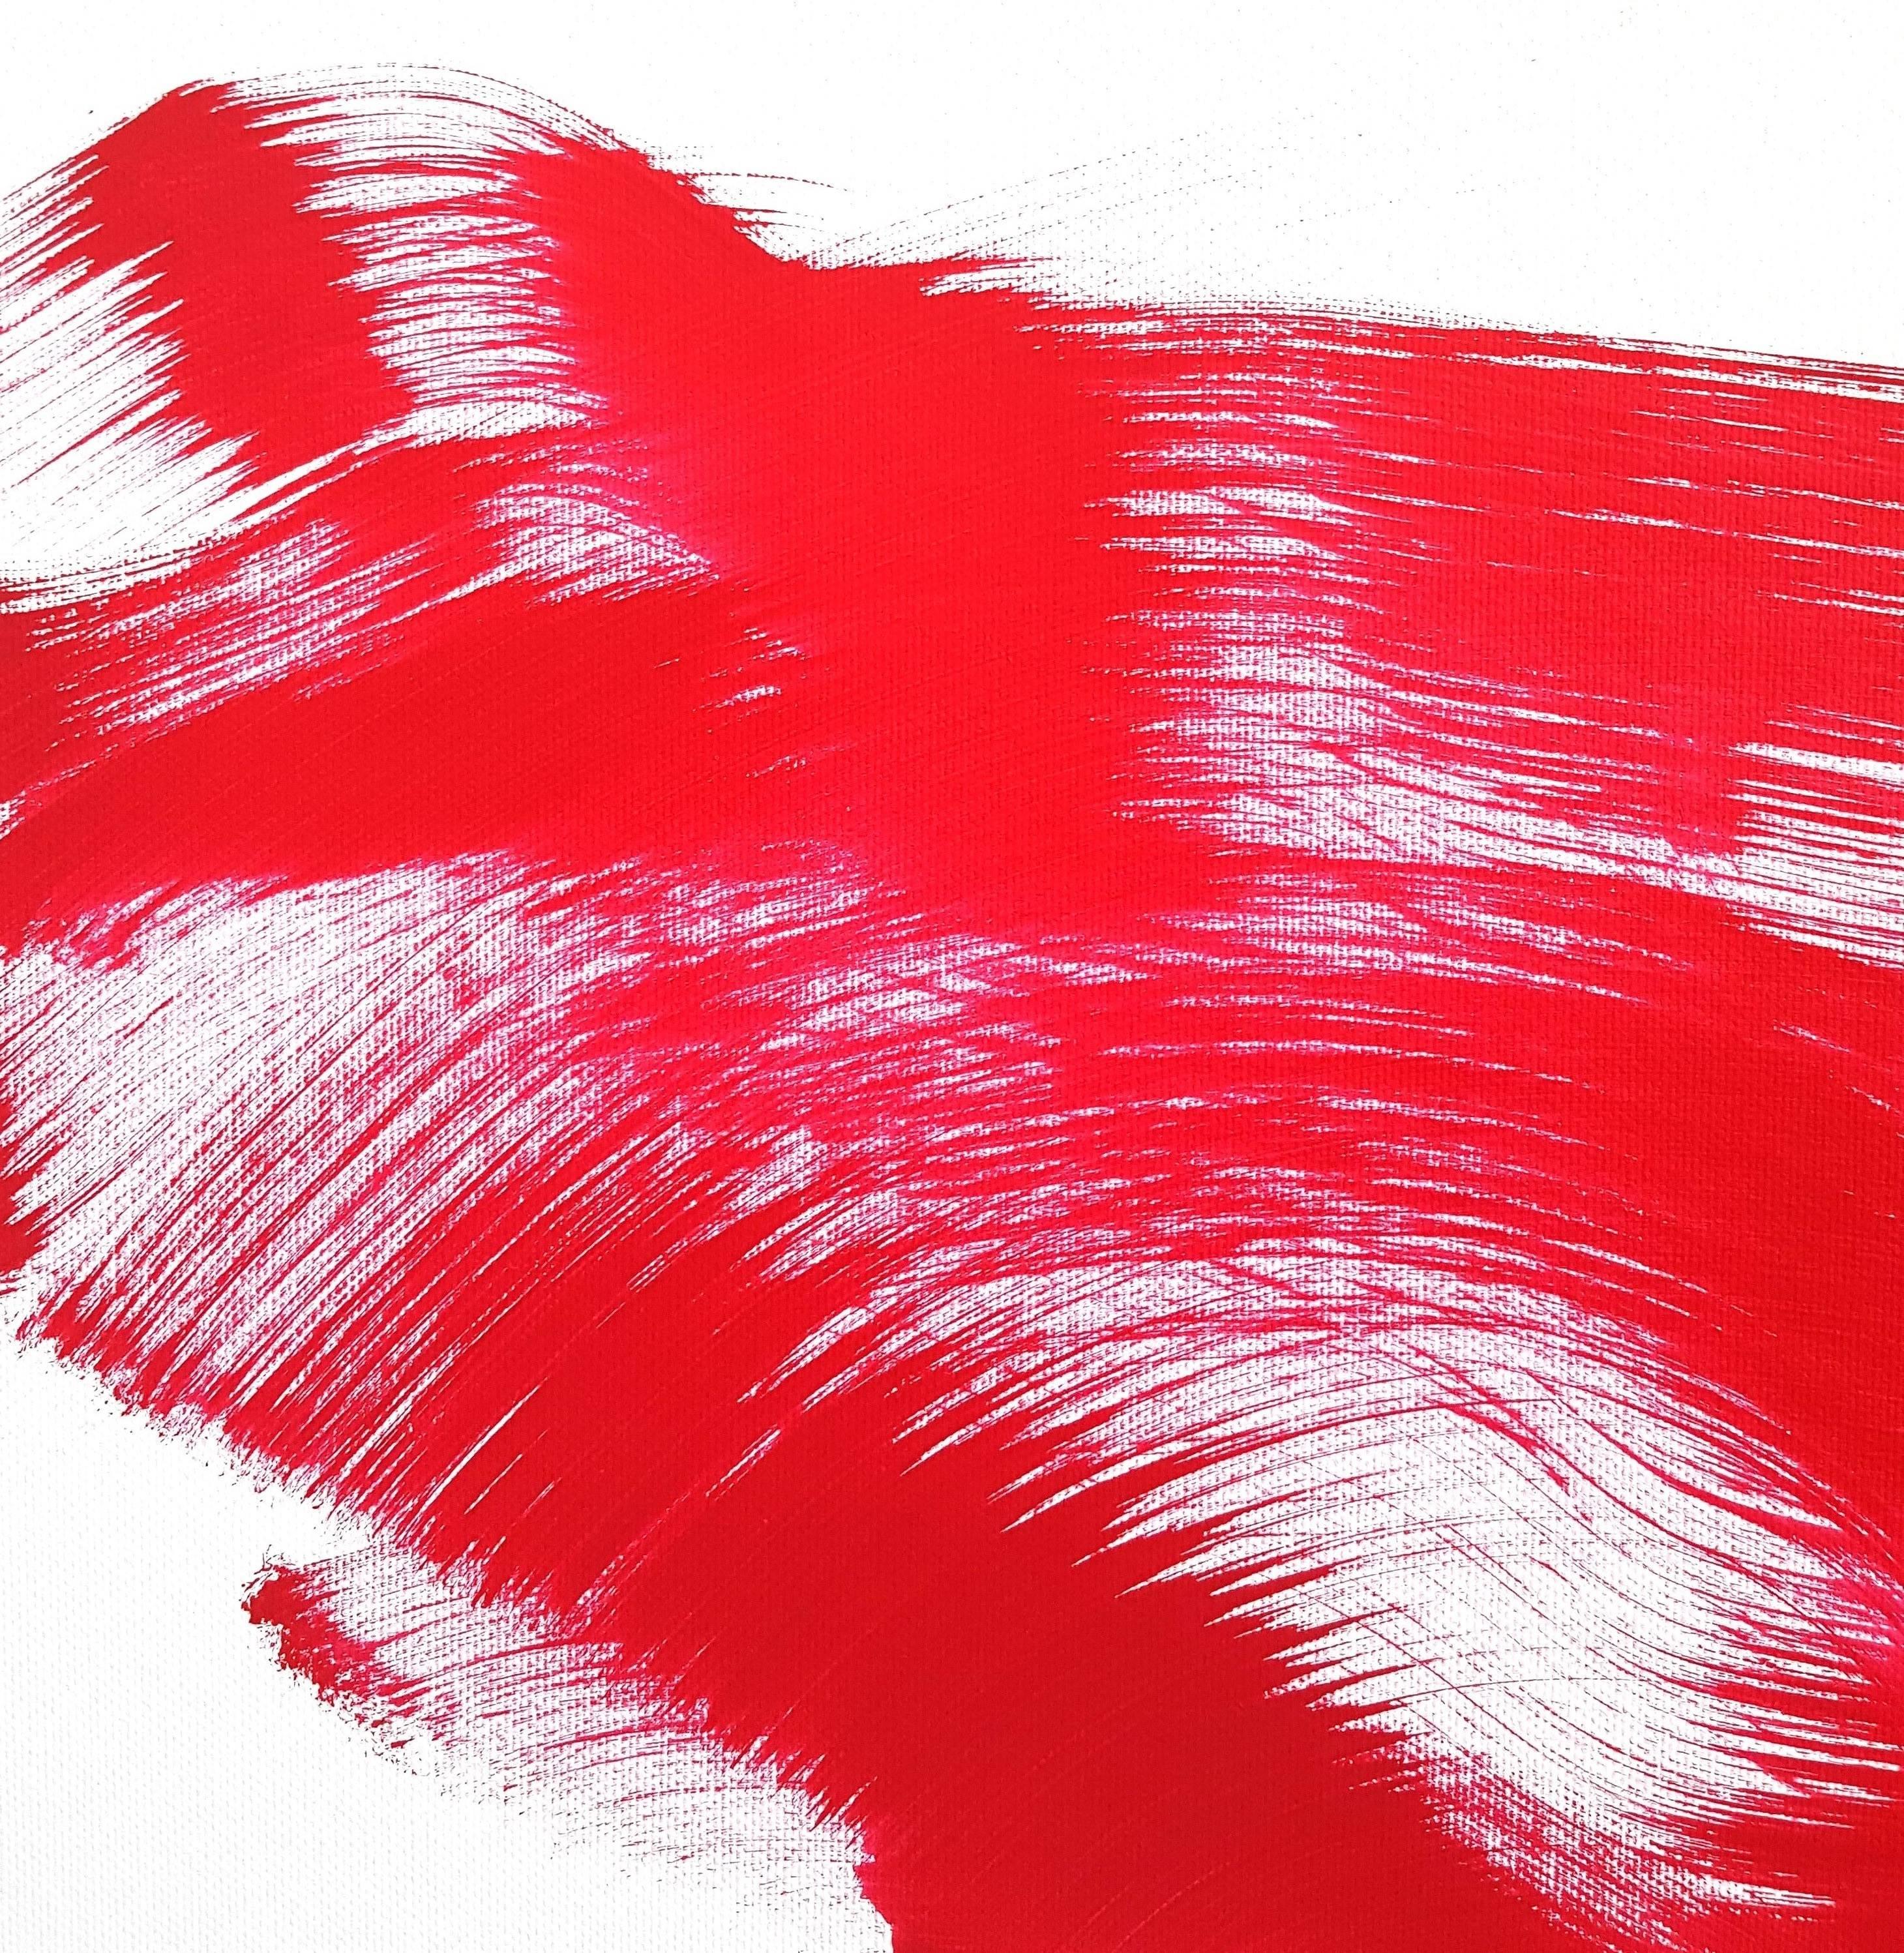 Das rote Kleid 5 - Gerahmtes Dynamisches Original Rotes Figuratives Abstraktes Ölgemälde  (Abstrakter Expressionismus), Painting, von Bettina Mauel